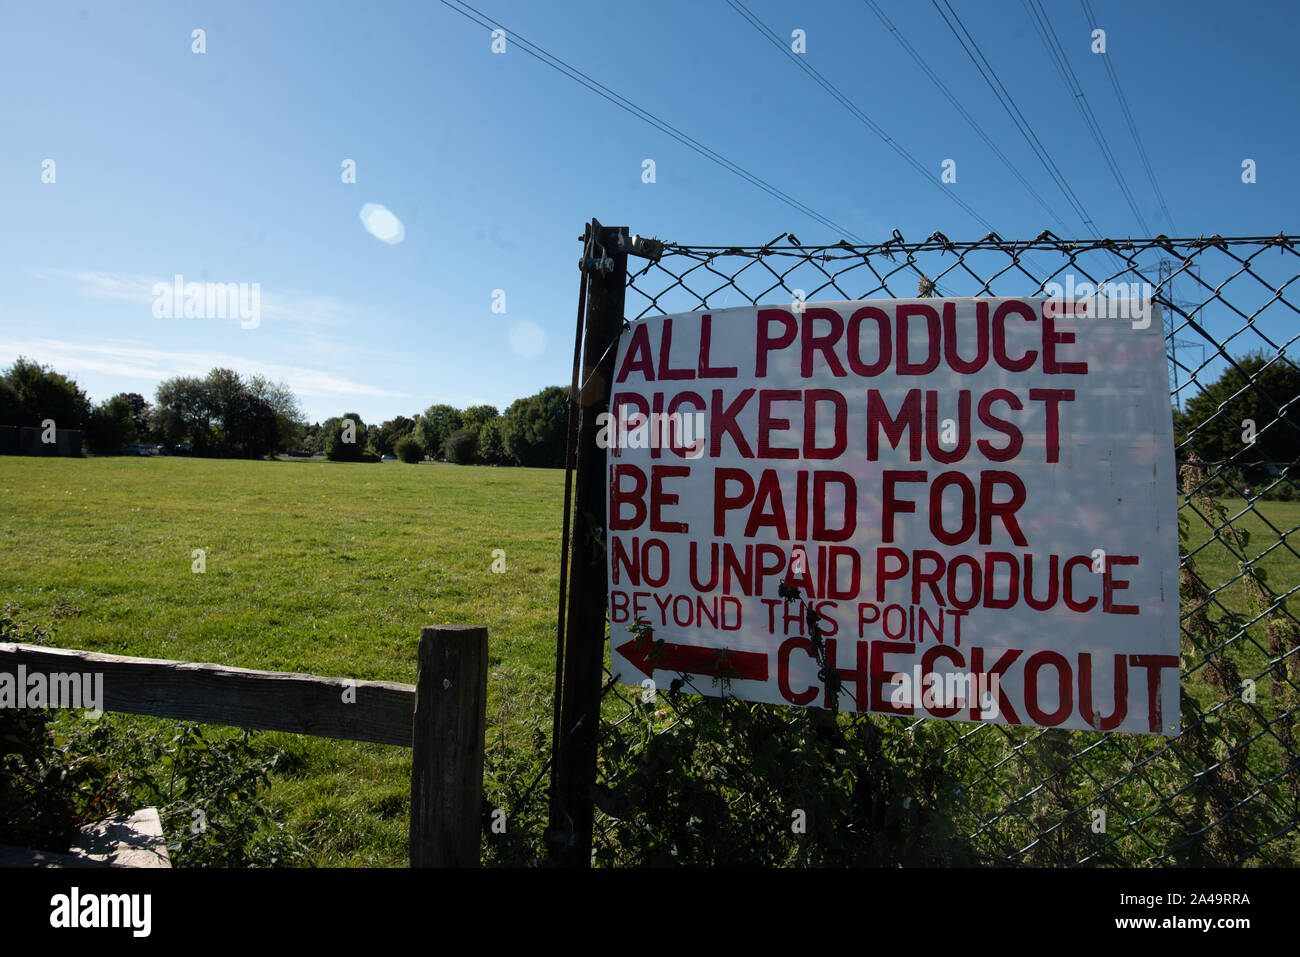 Kent, Royaume-Uni - 15 septembre 2019 : un rouge et blanc signe indique "tous les produits choisis doivent être payés pour" et "pas de produire des impayés au-delà de ce point". Banque D'Images